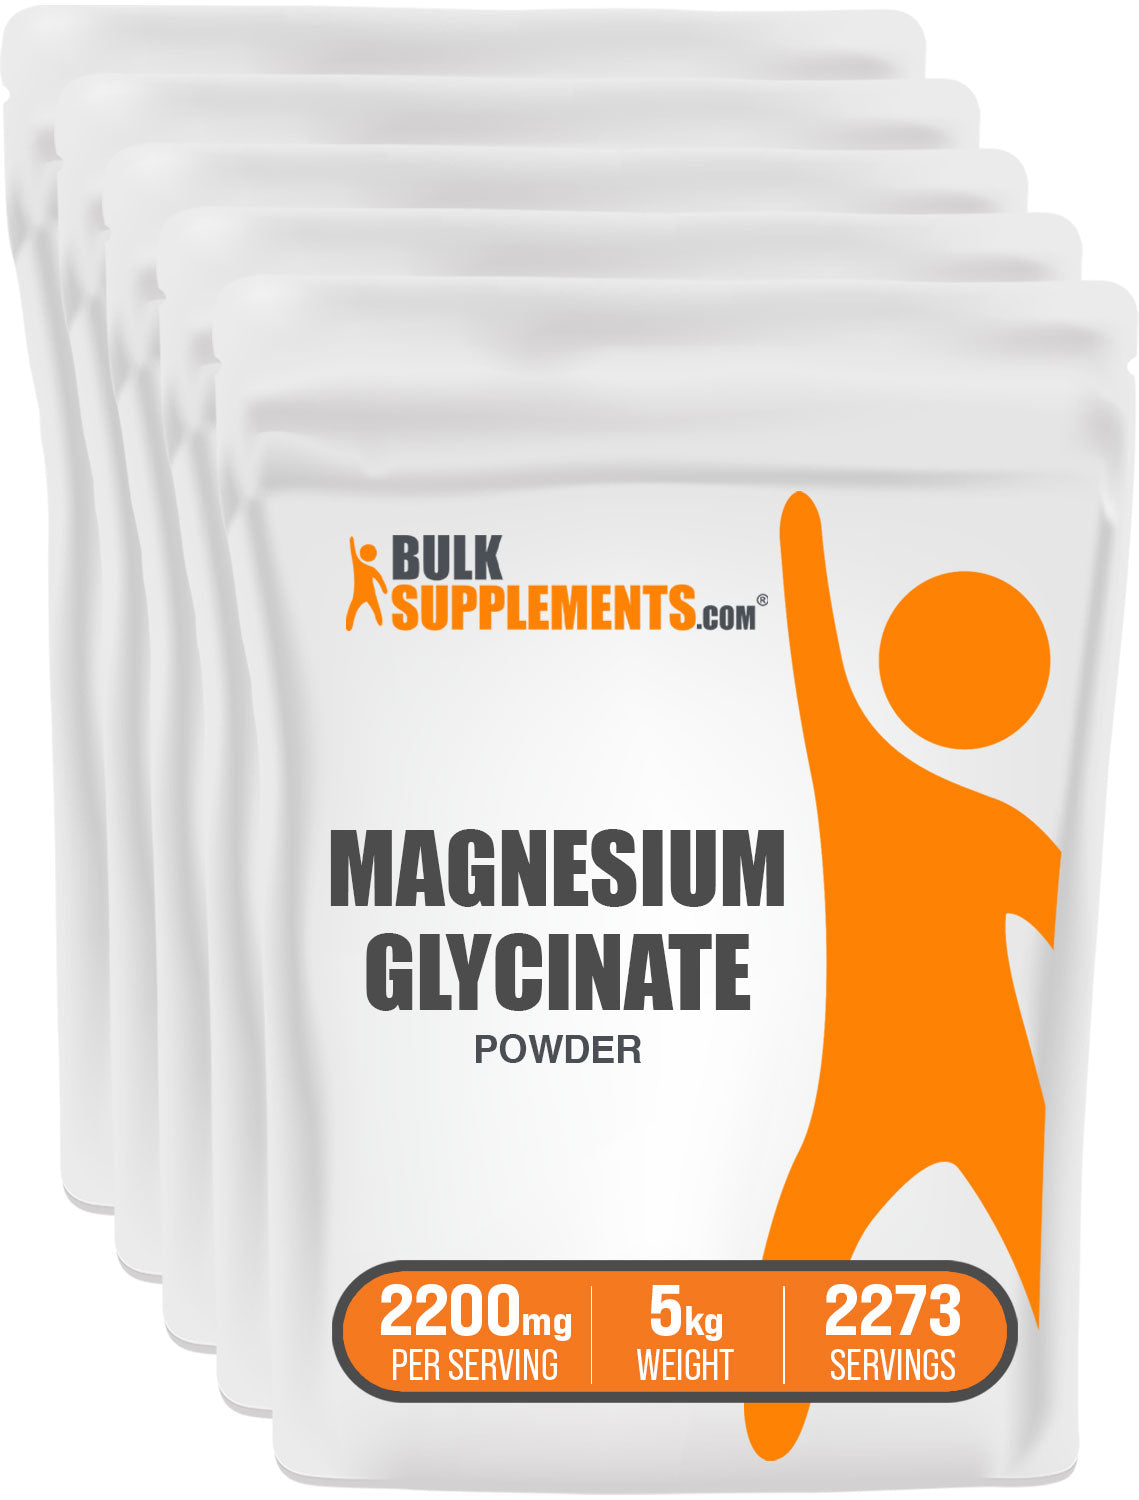 Magnesium glycinate pure magnesium glycinate 5kg bag